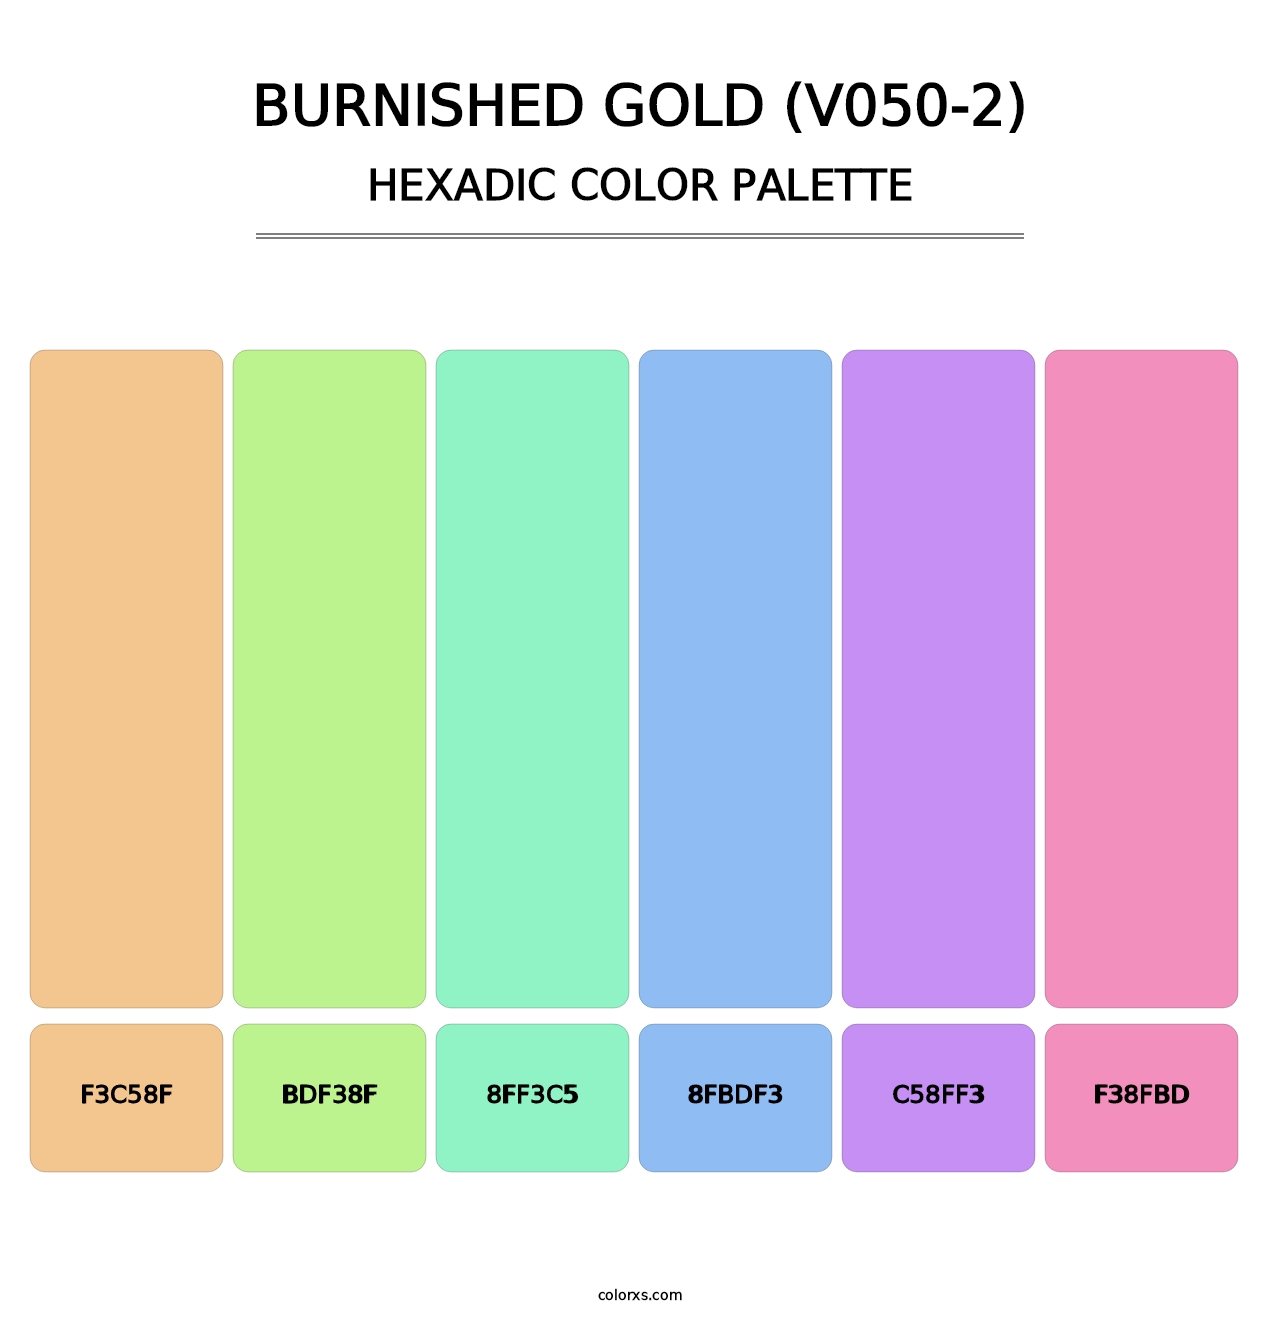 Burnished Gold (V050-2) - Hexadic Color Palette